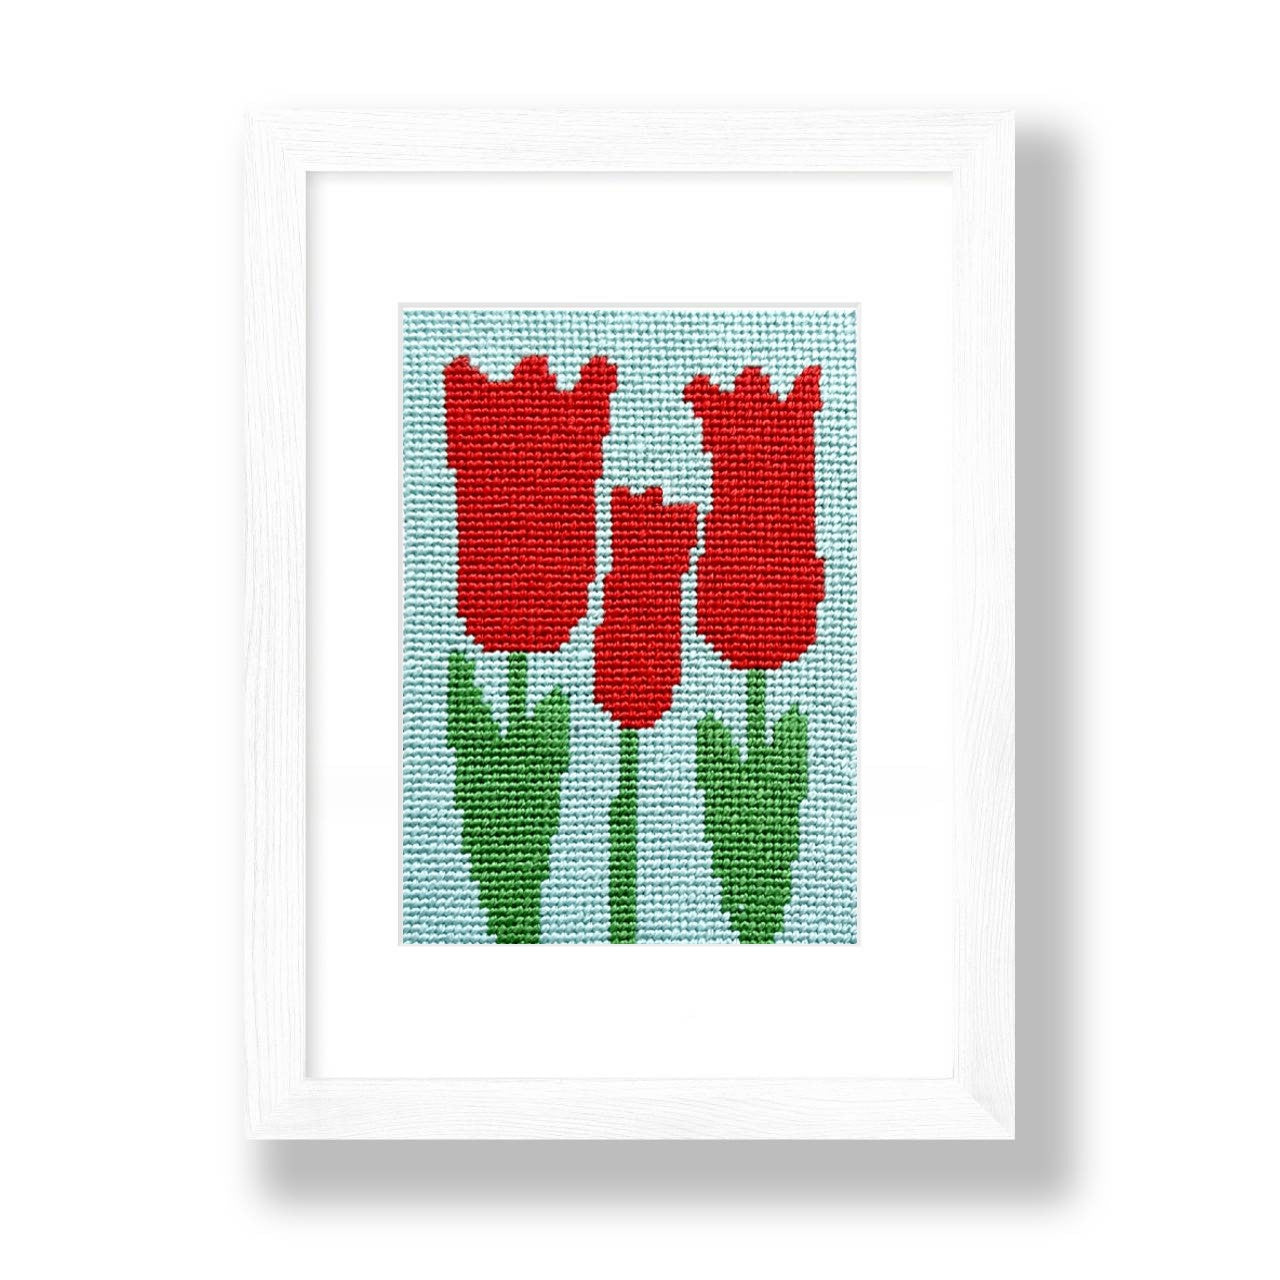 Red Tulips beginner needlepoint kit